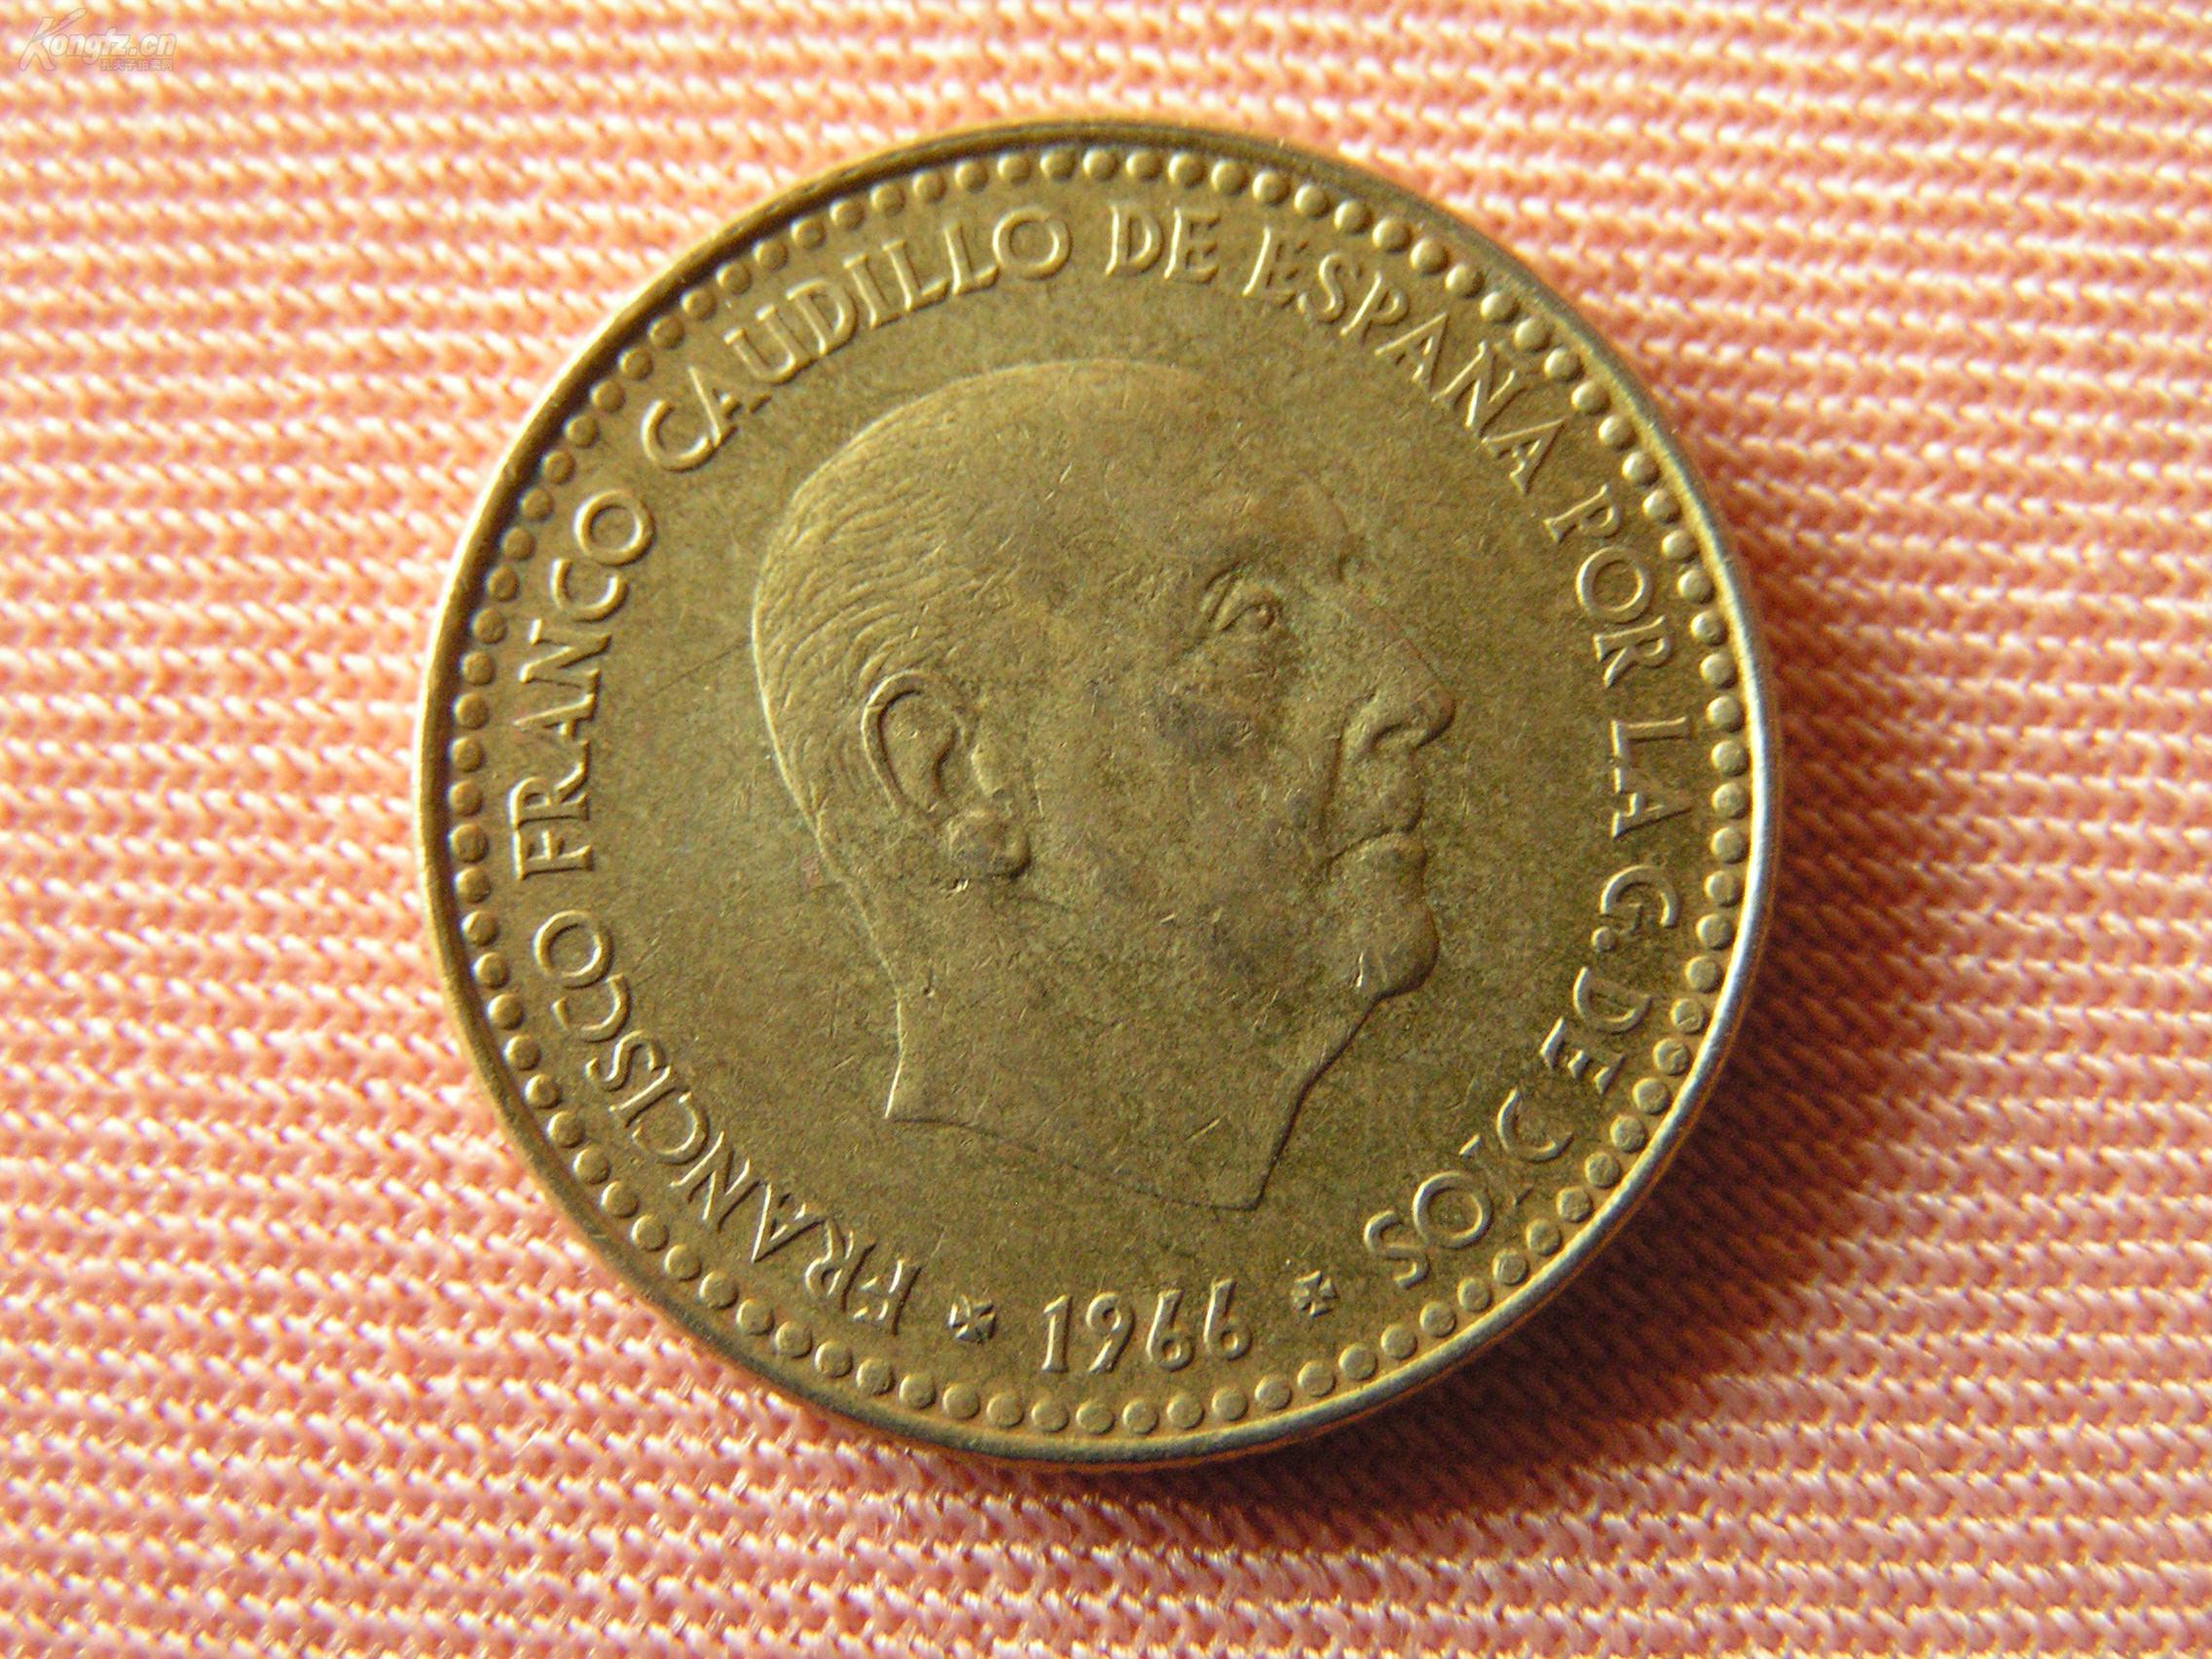 2006年各国硬币图片